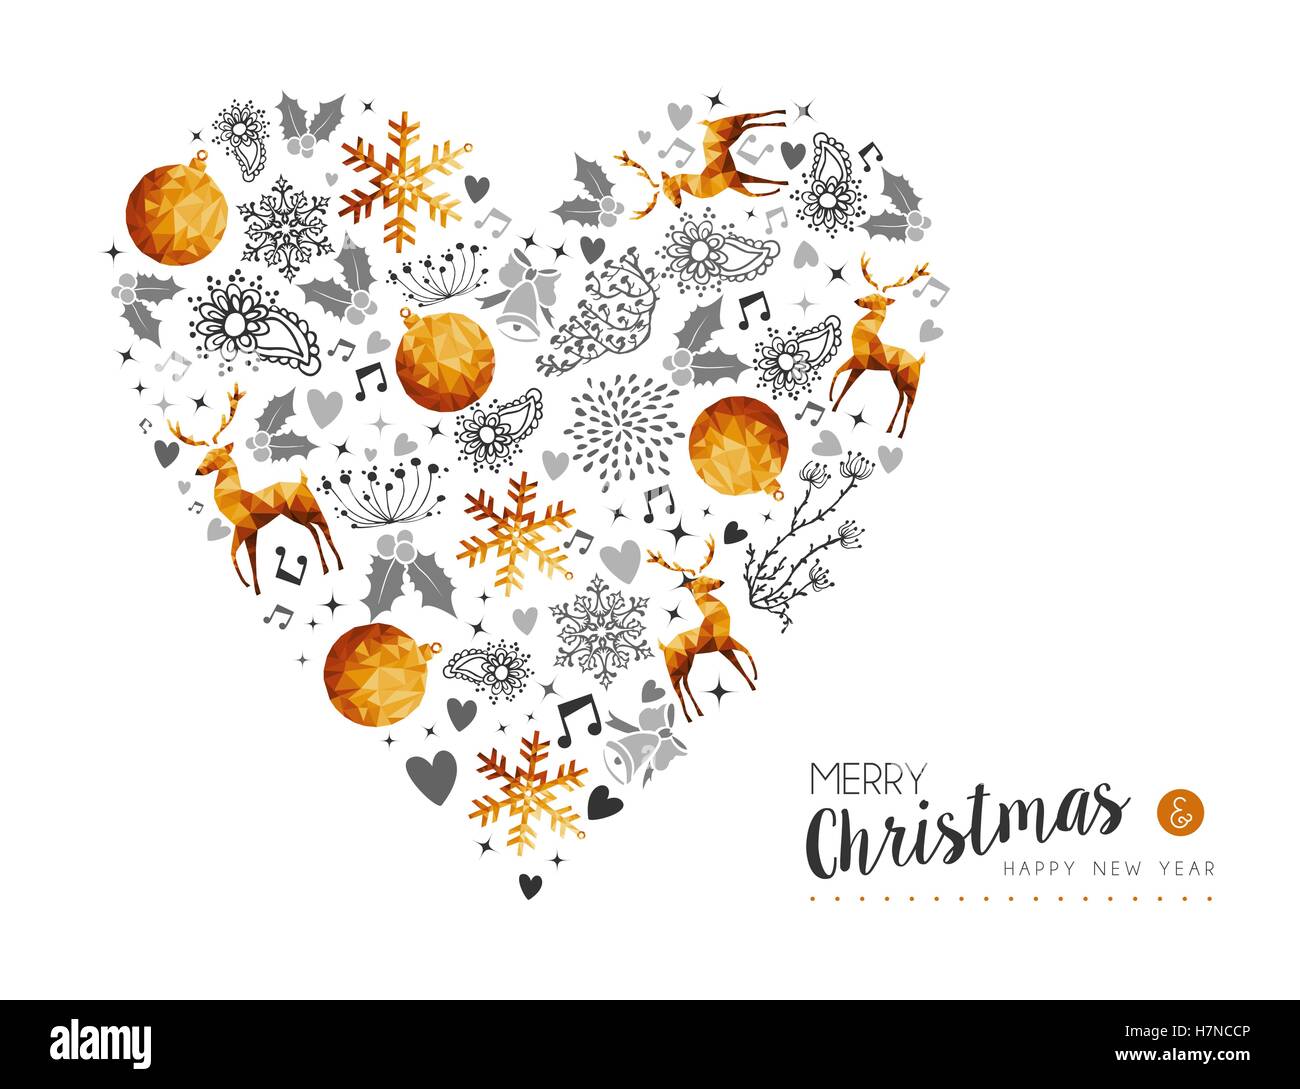 Frohe Weihnachten und Happy New Year goldenes Herz Form Dekoration mit Hirschen, Natur und Urlaub Ornamenten. EPS10 Vektor. Stock Vektor